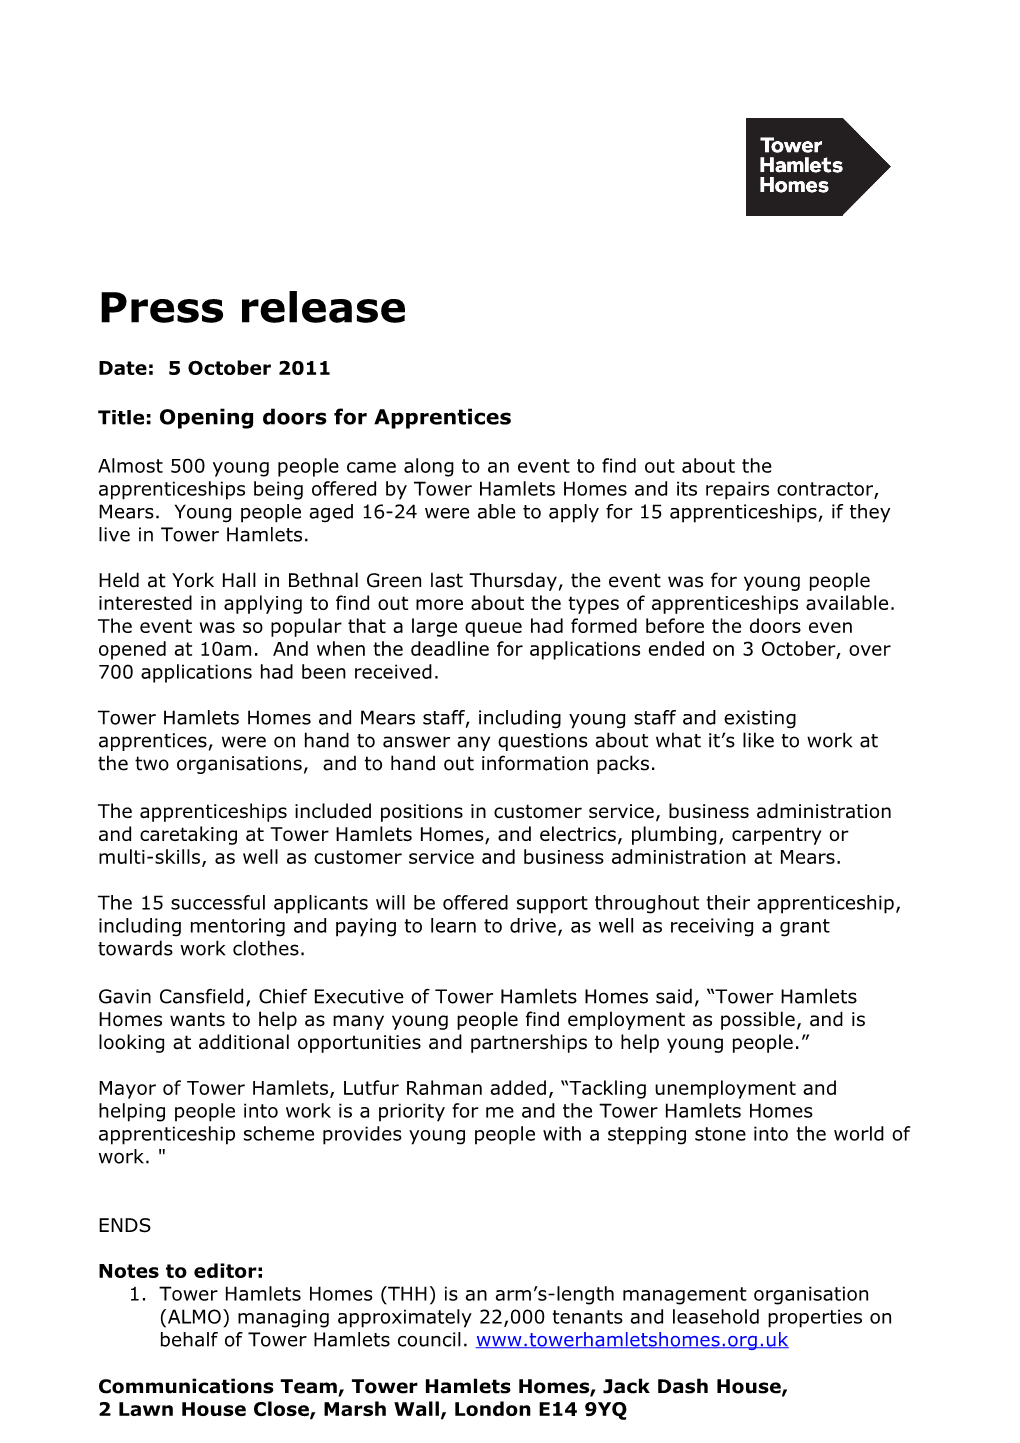 Press Release Apprentice Event 300911